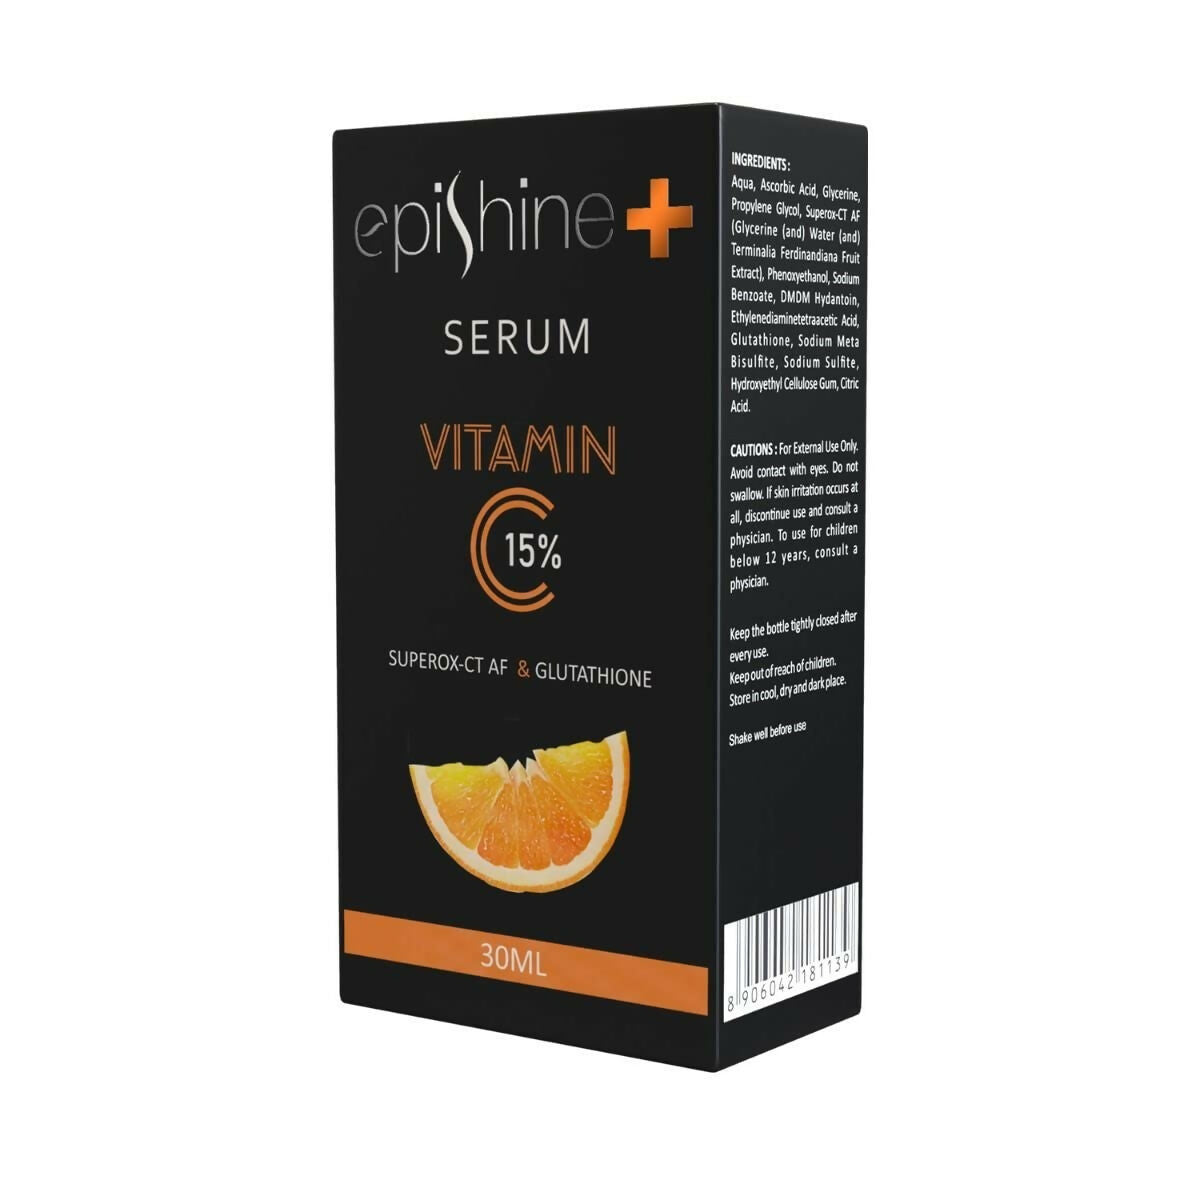 Epishine + Serum Vitamin C 15% - Distacart